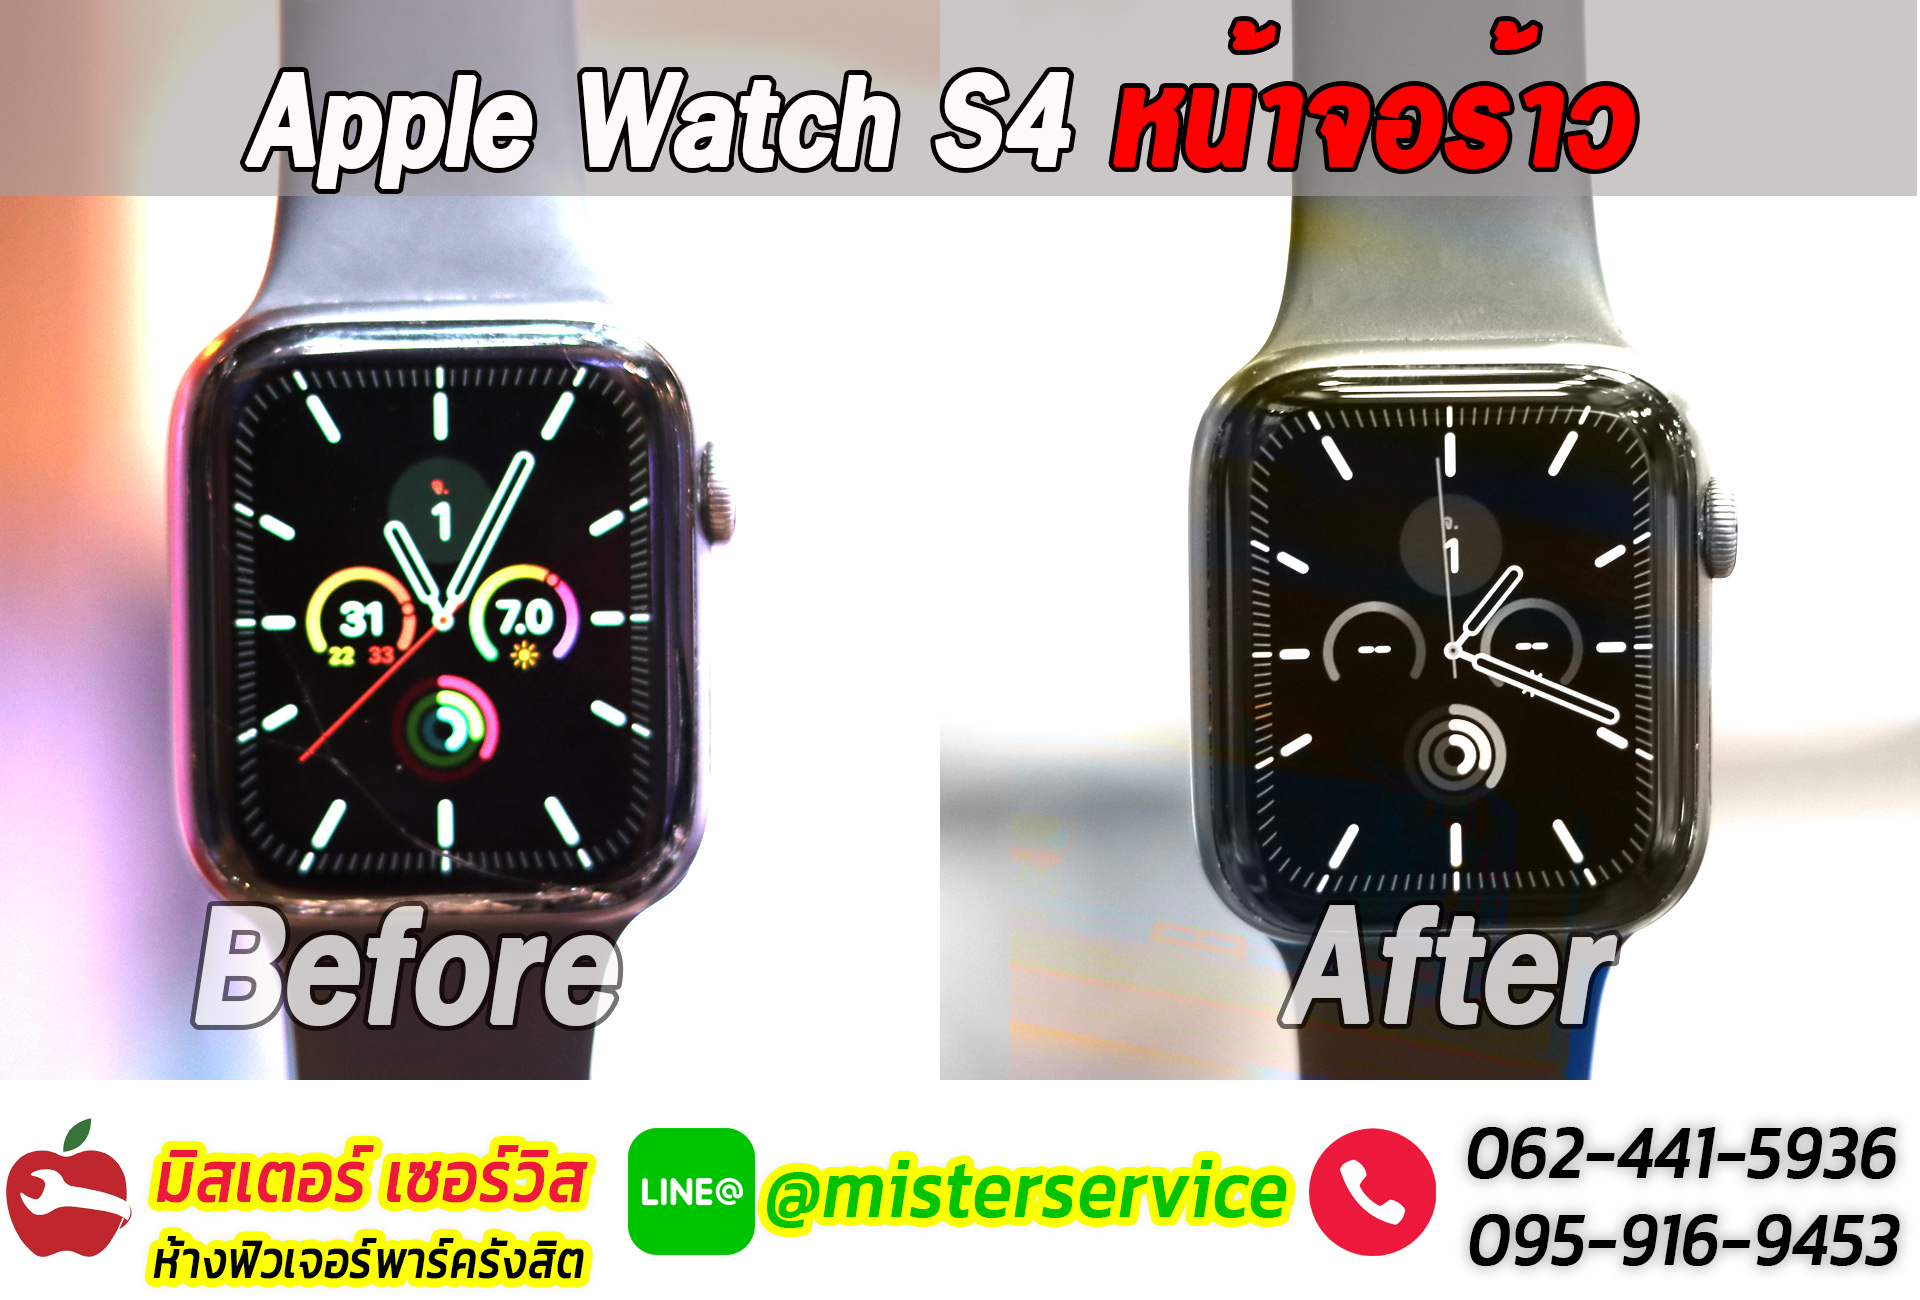 ซ่อม apple watch ปากเกร็ด ติวานนท์